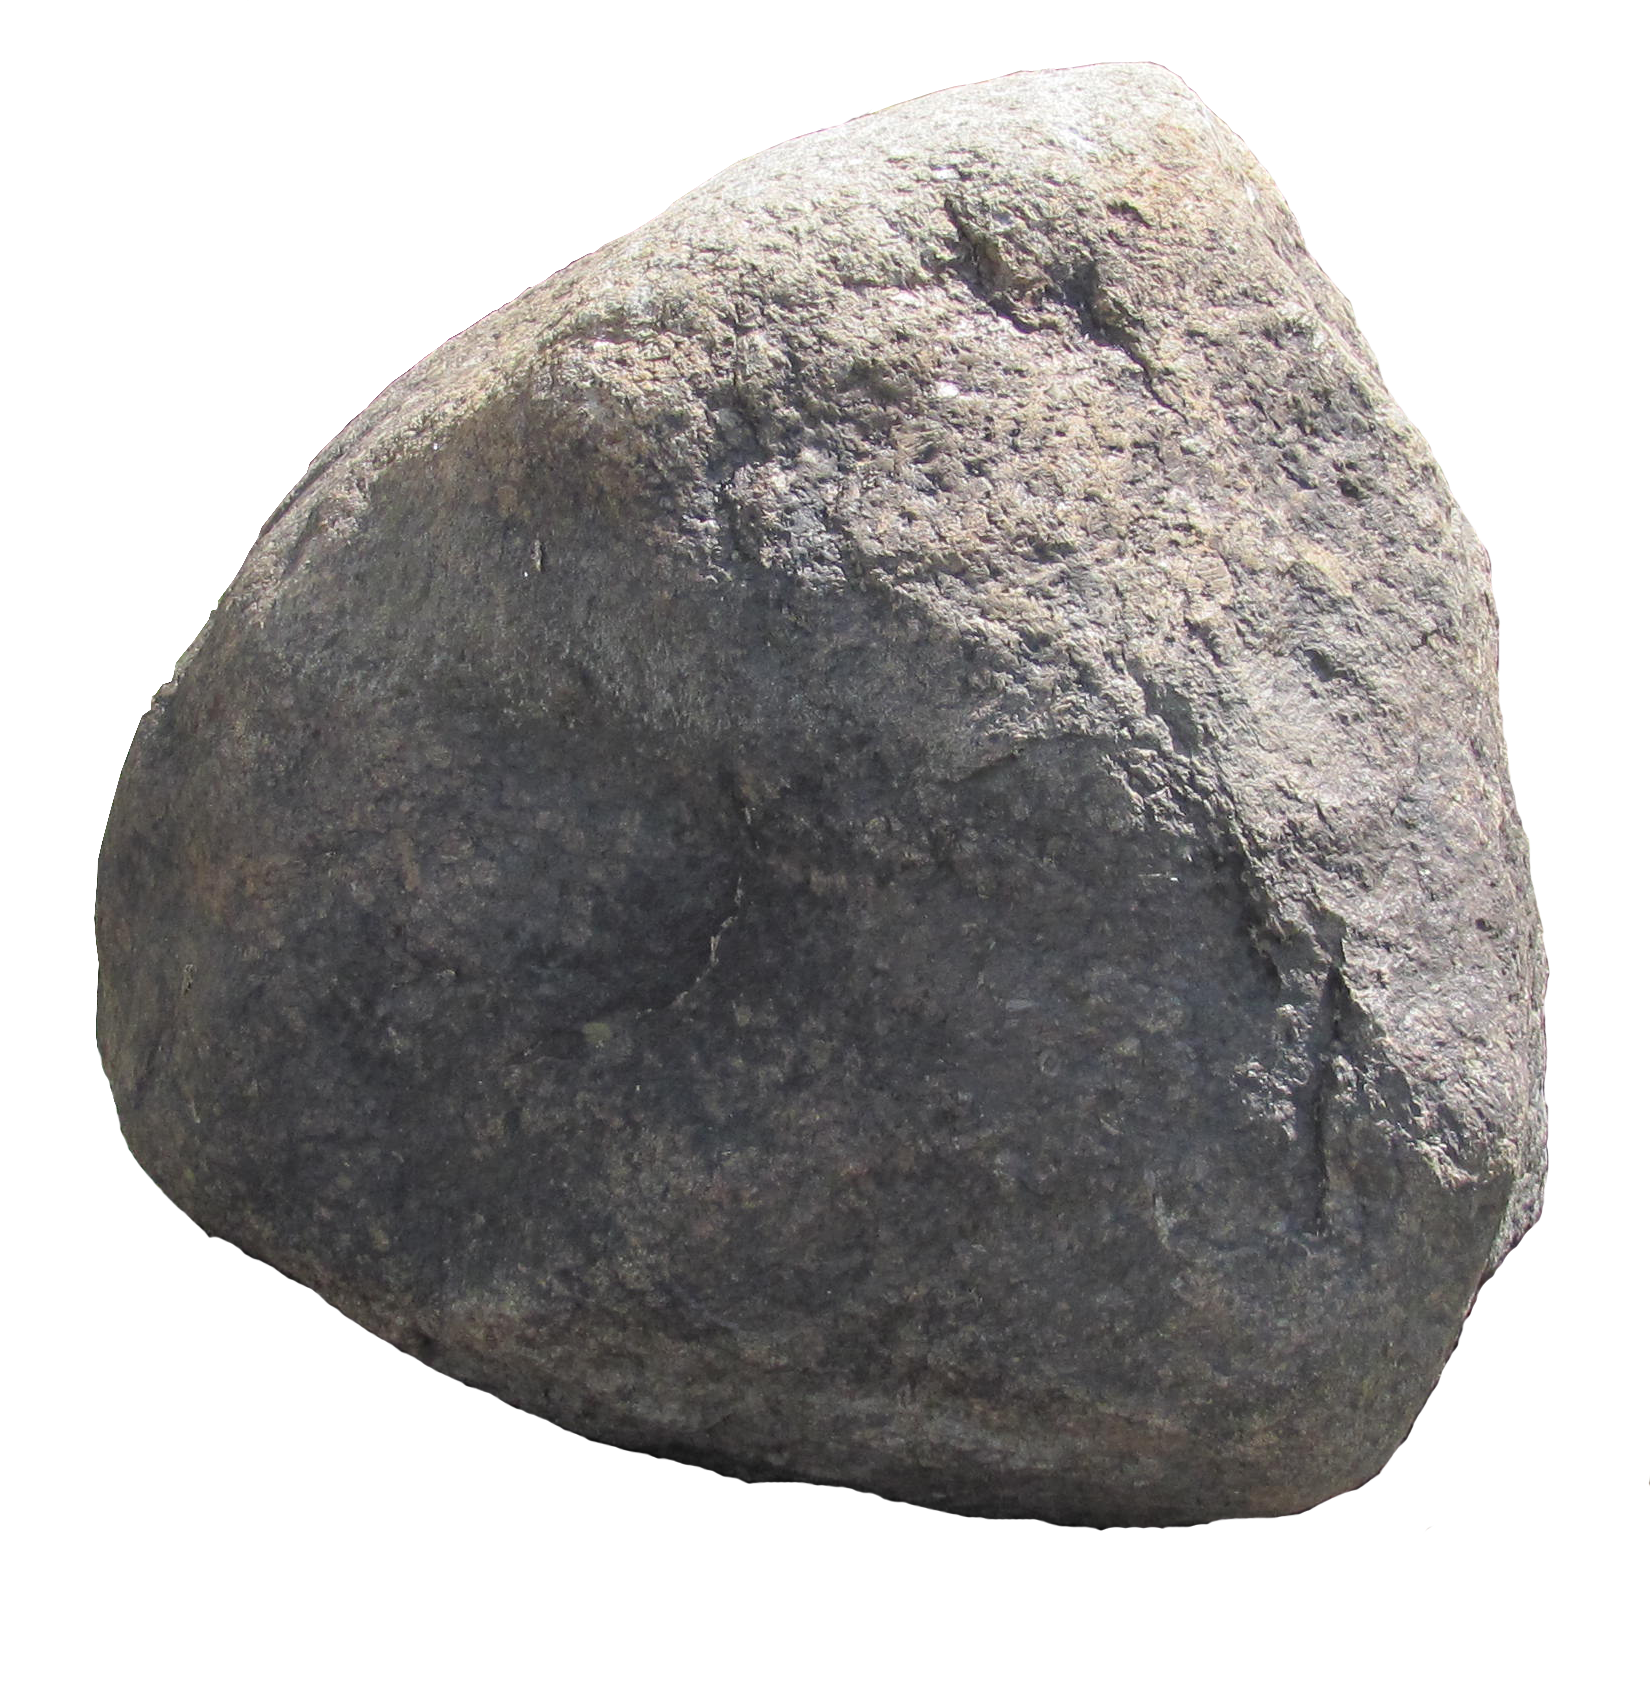 หิน